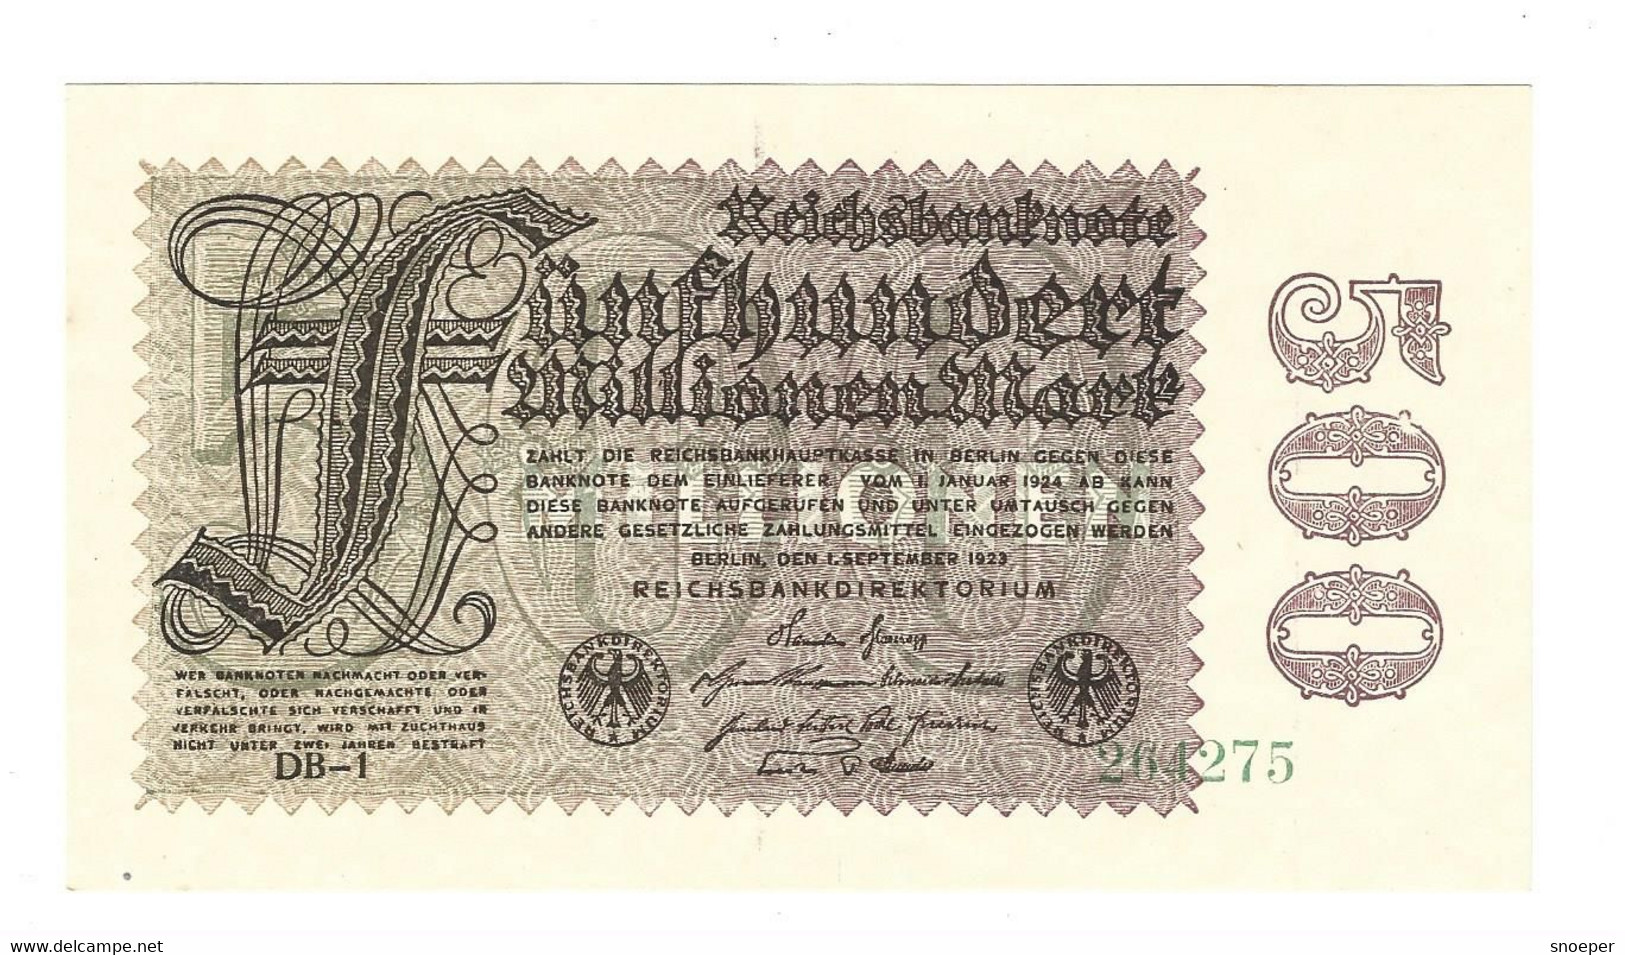 *berlin 500 Millionen  Mark  1/9/1923  110f  Unc - 500 Mio. Mark